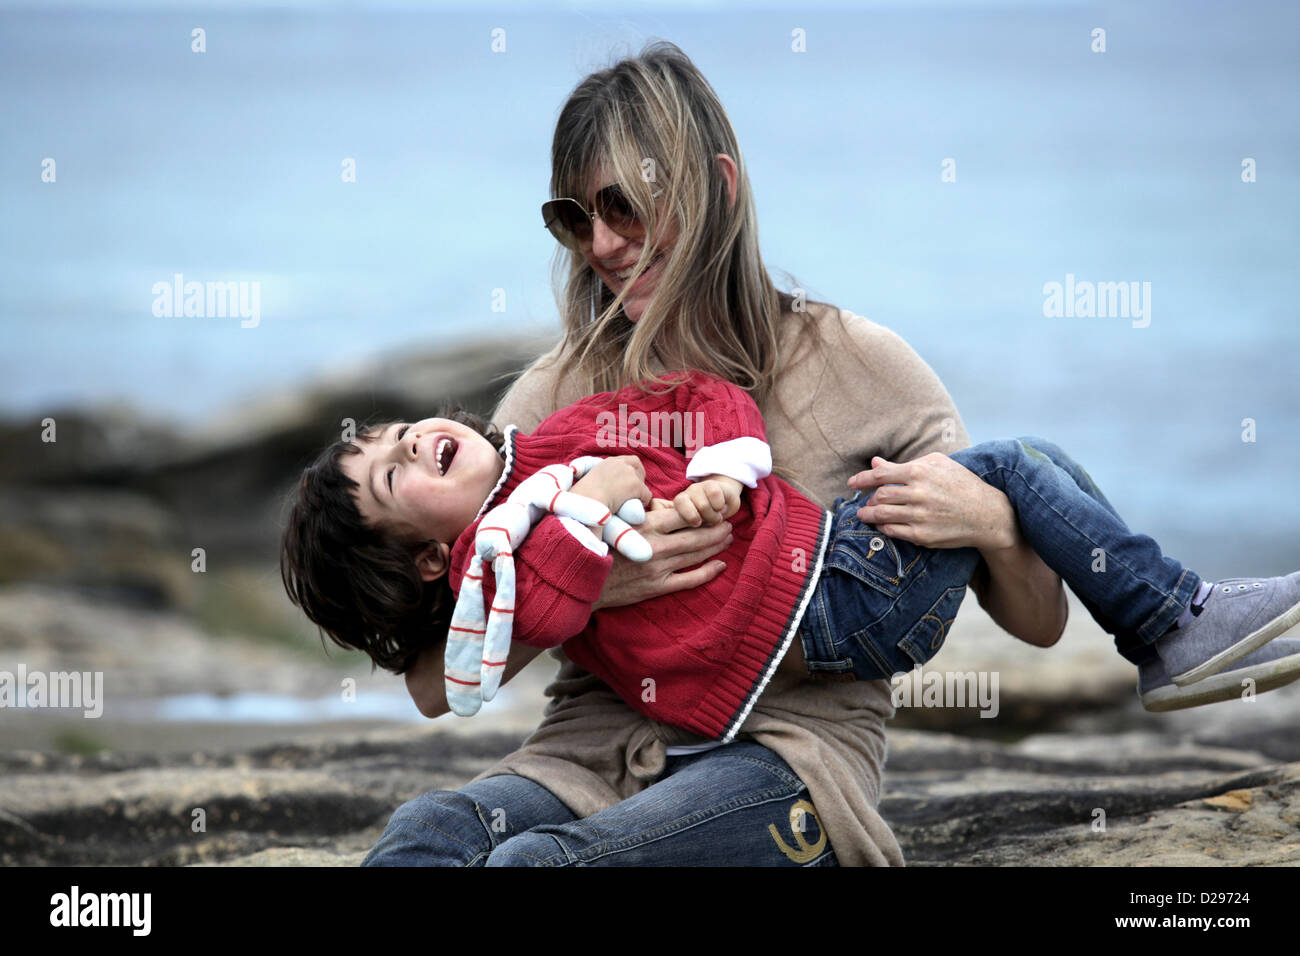 Mother and child enjoying life Stock Photo